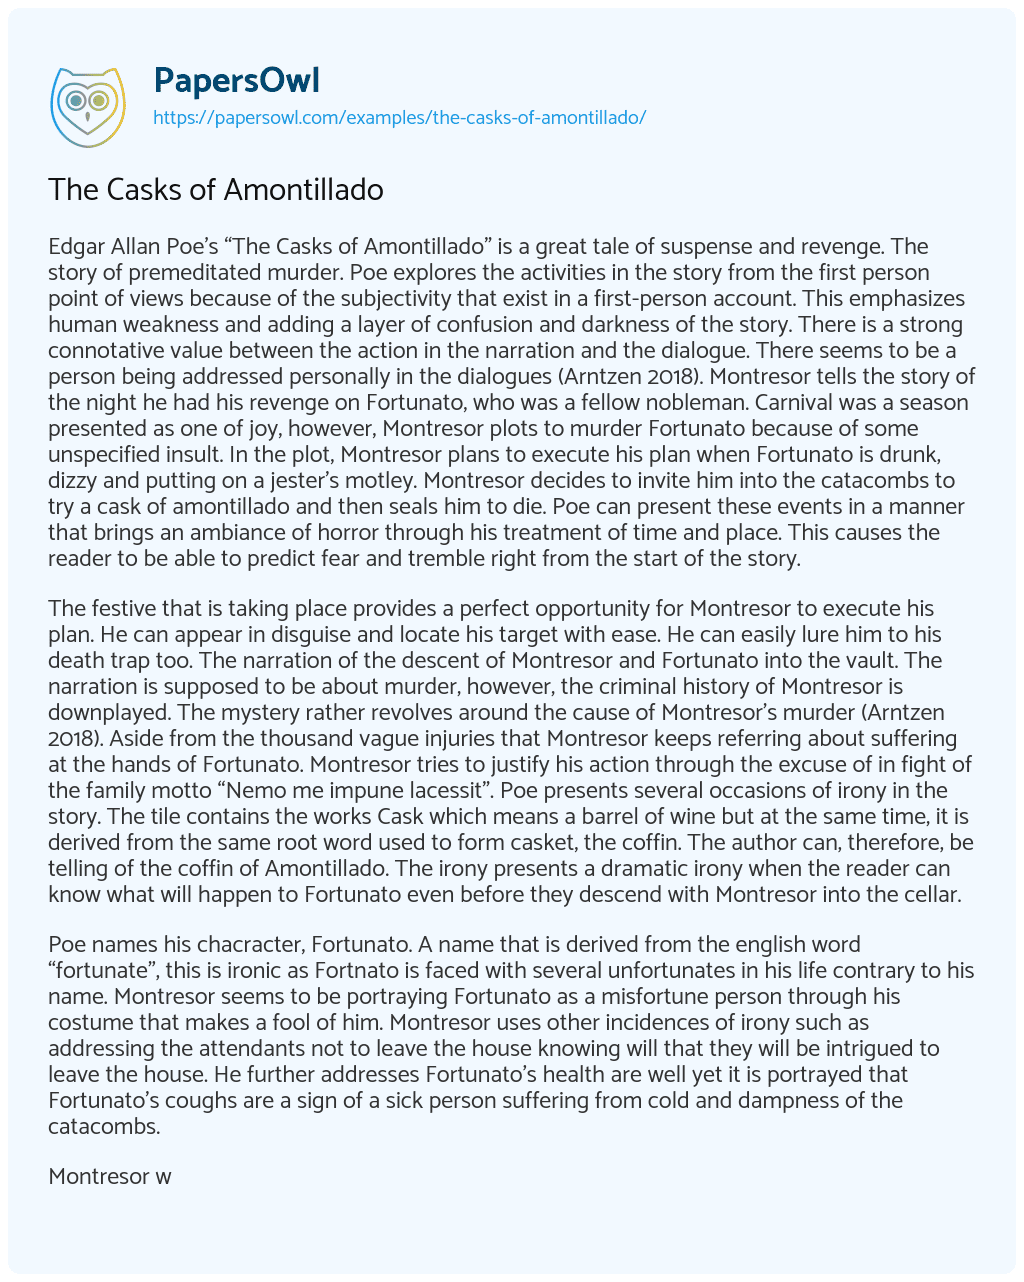 The Casks of Amontillado essay